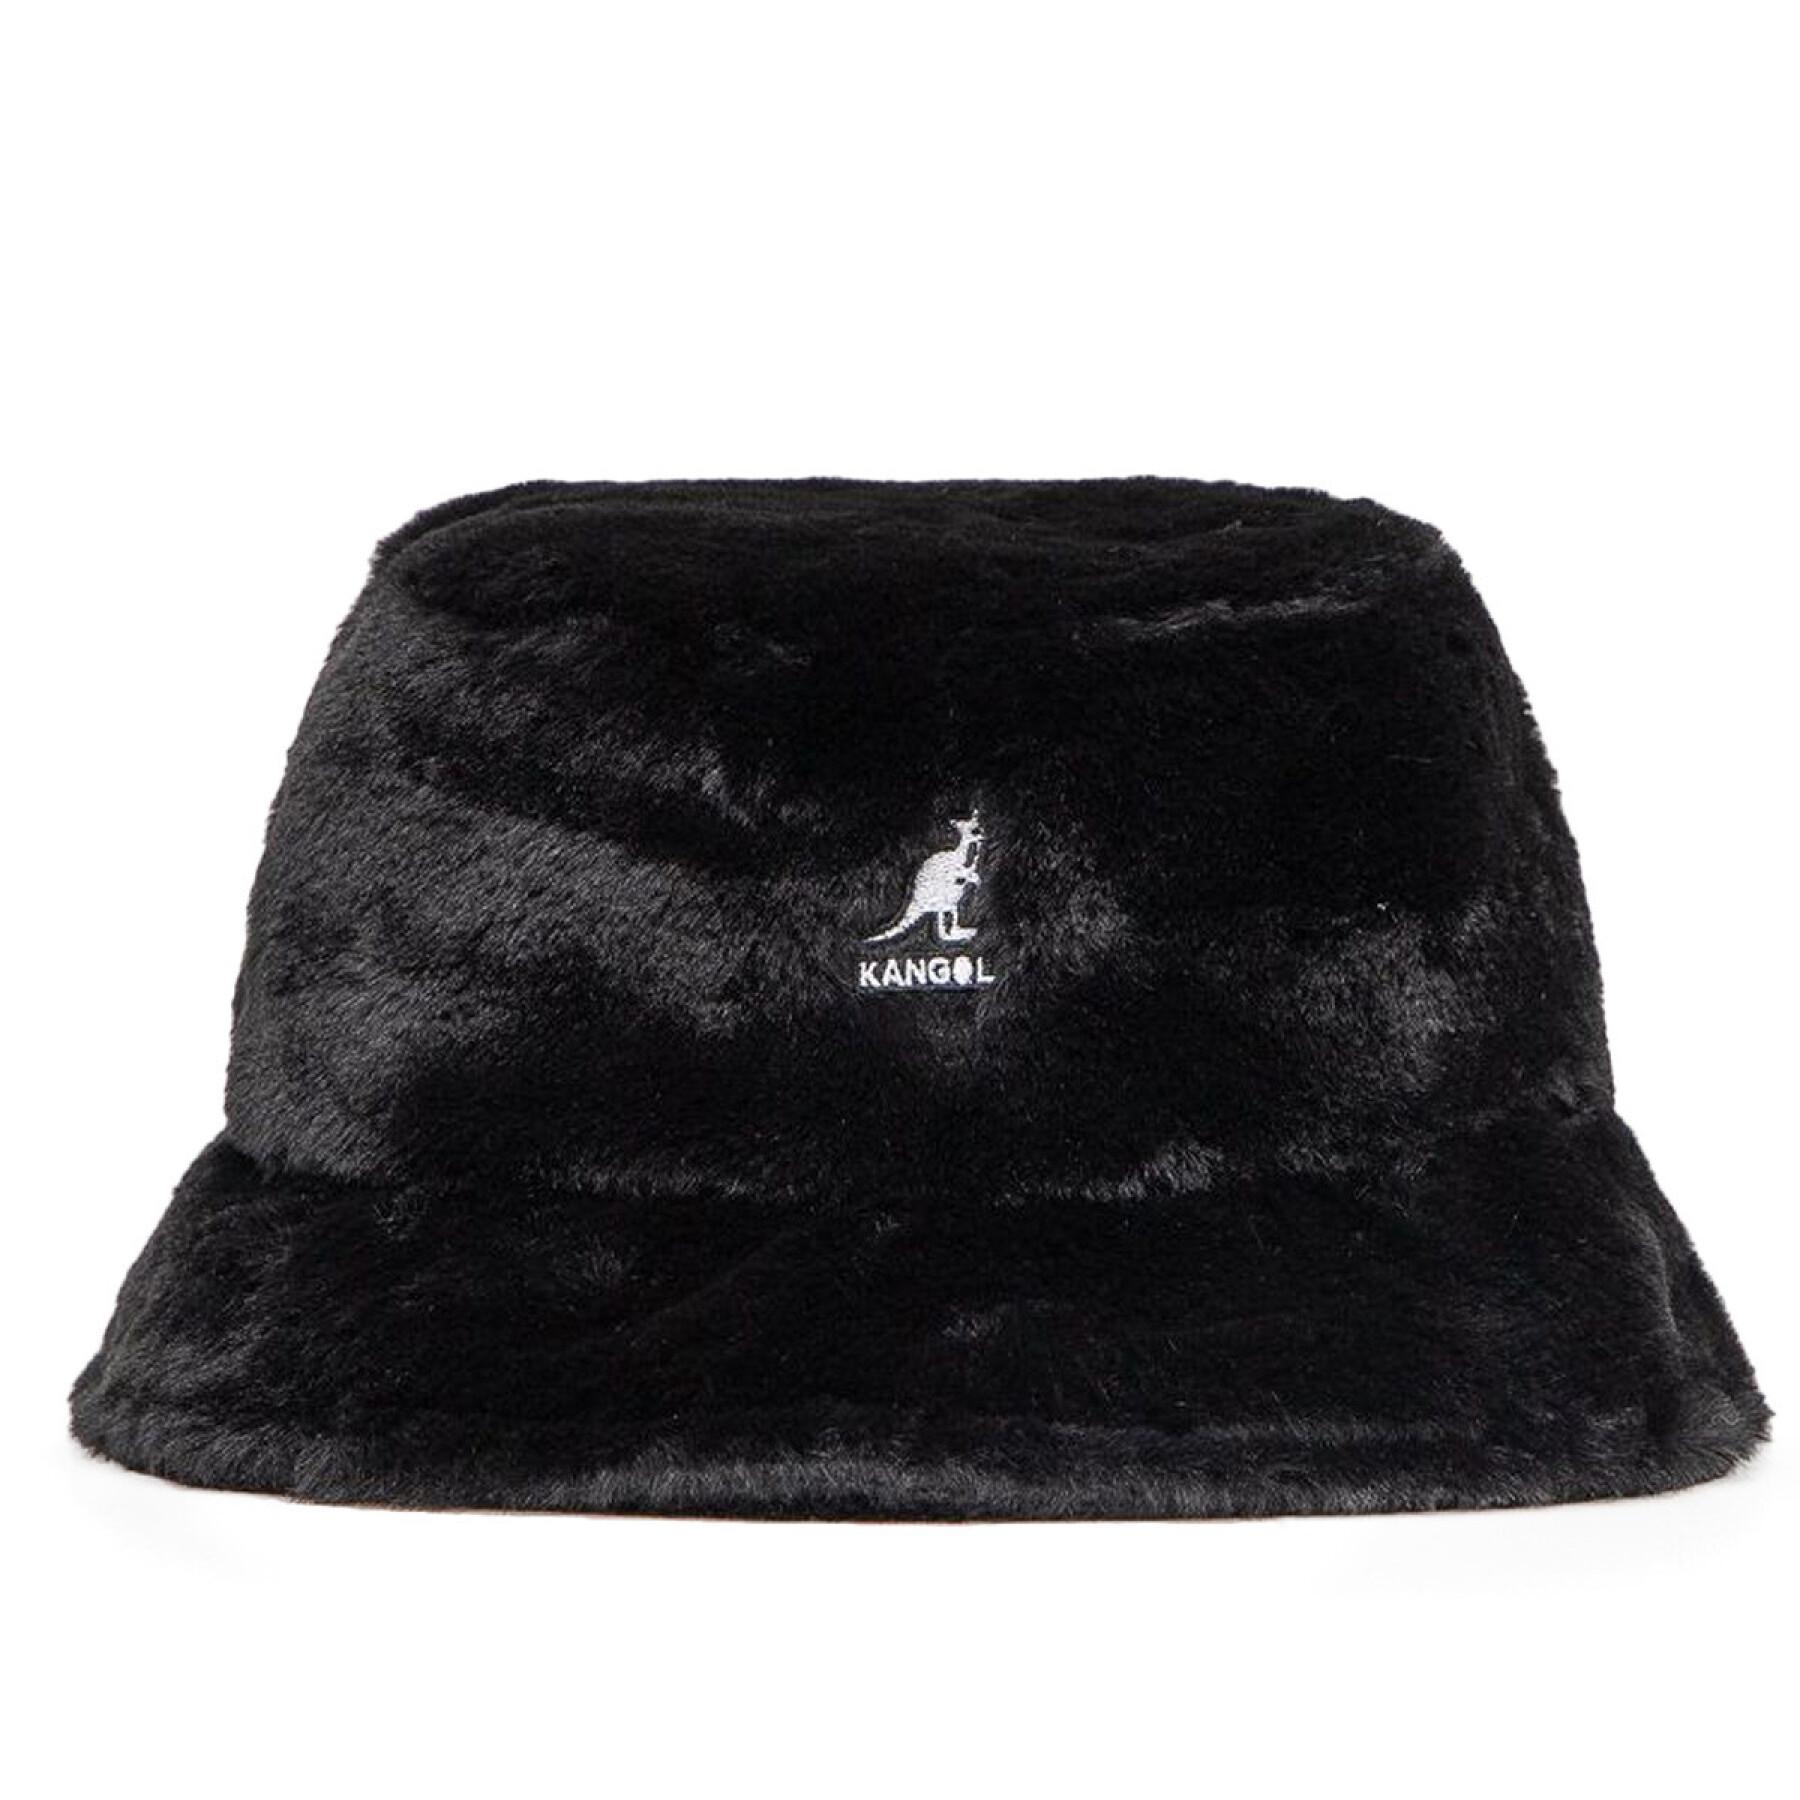 Kangol women's faux fur bucket hat